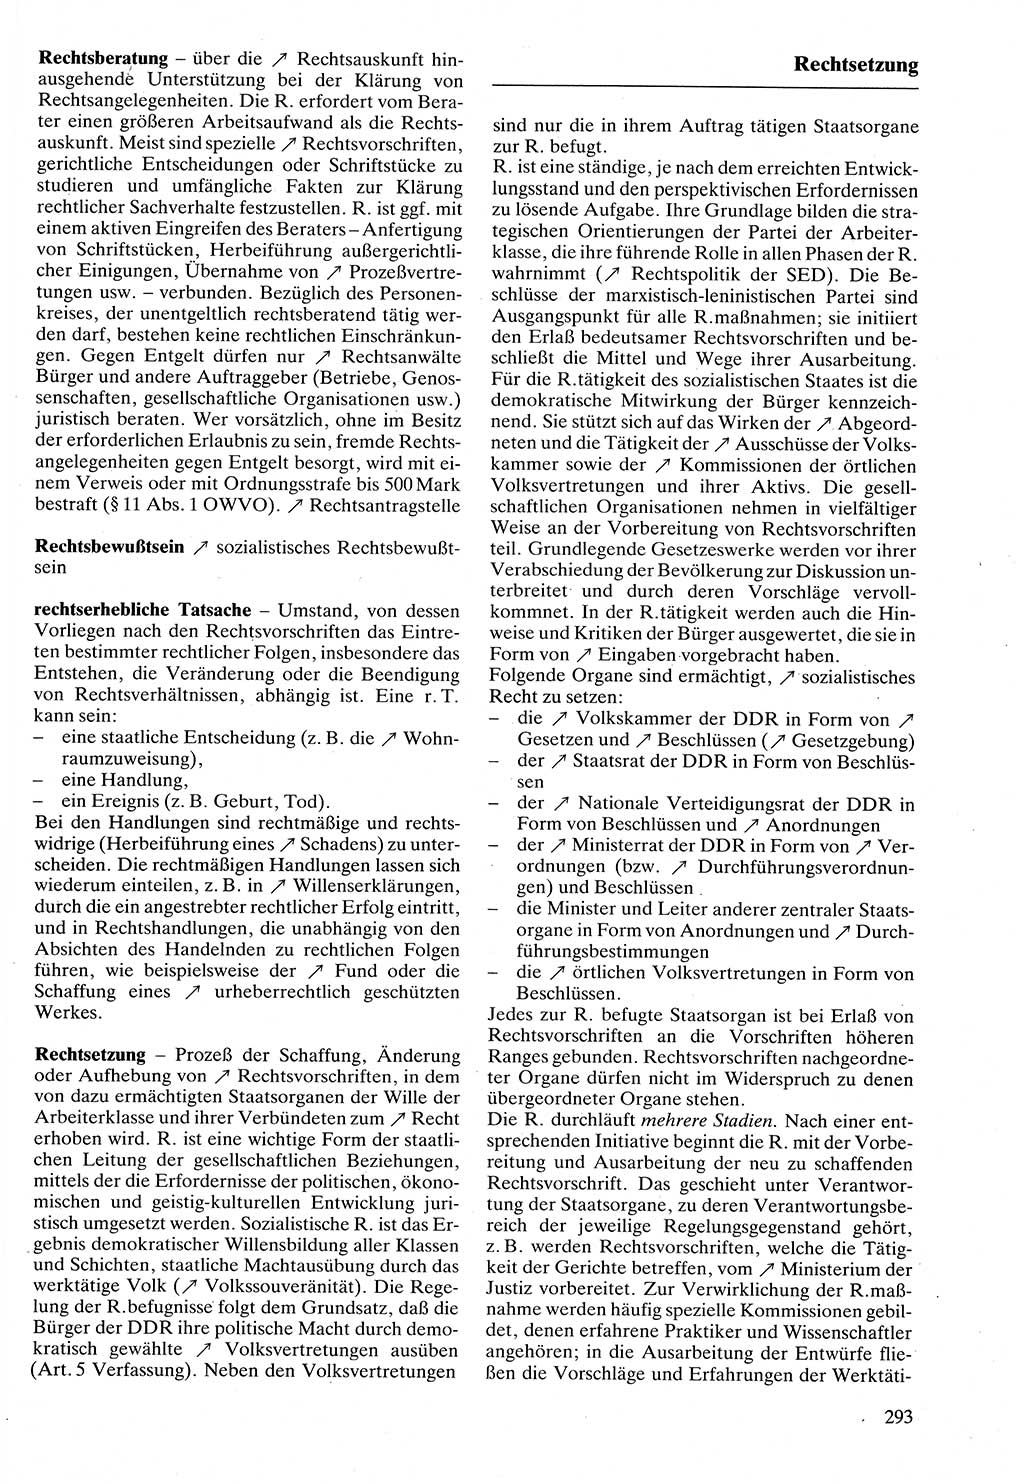 Rechtslexikon [Deutsche Demokratische Republik (DDR)] 1988, Seite 293 (Rechtslex. DDR 1988, S. 293)